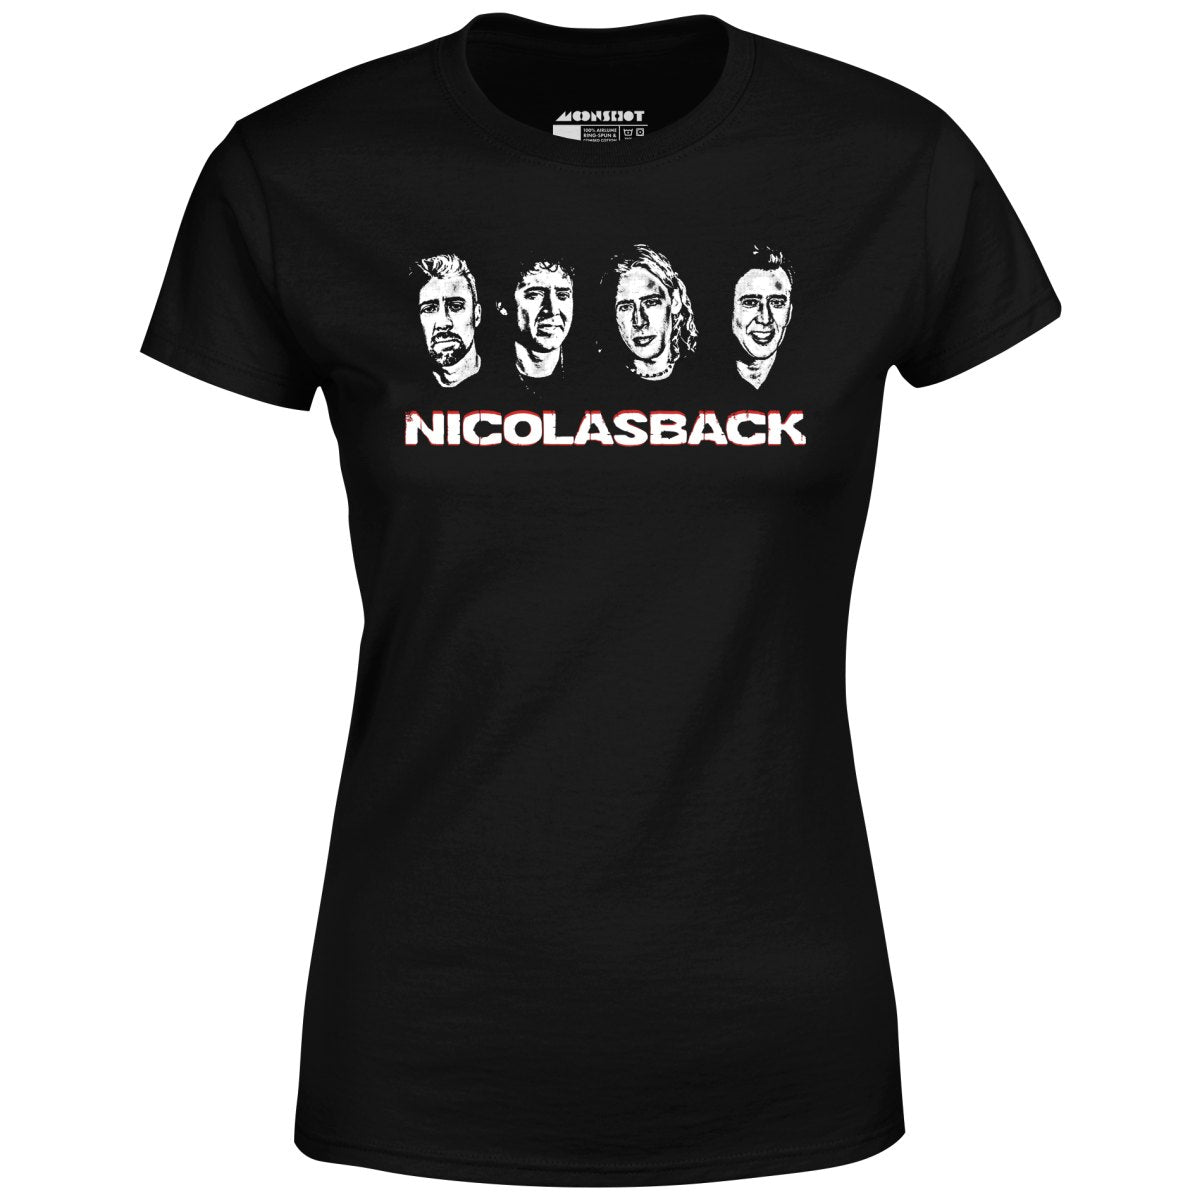 Nicolasback - Nickelback Nicolas Cage Mashup - Women's T-Shirt